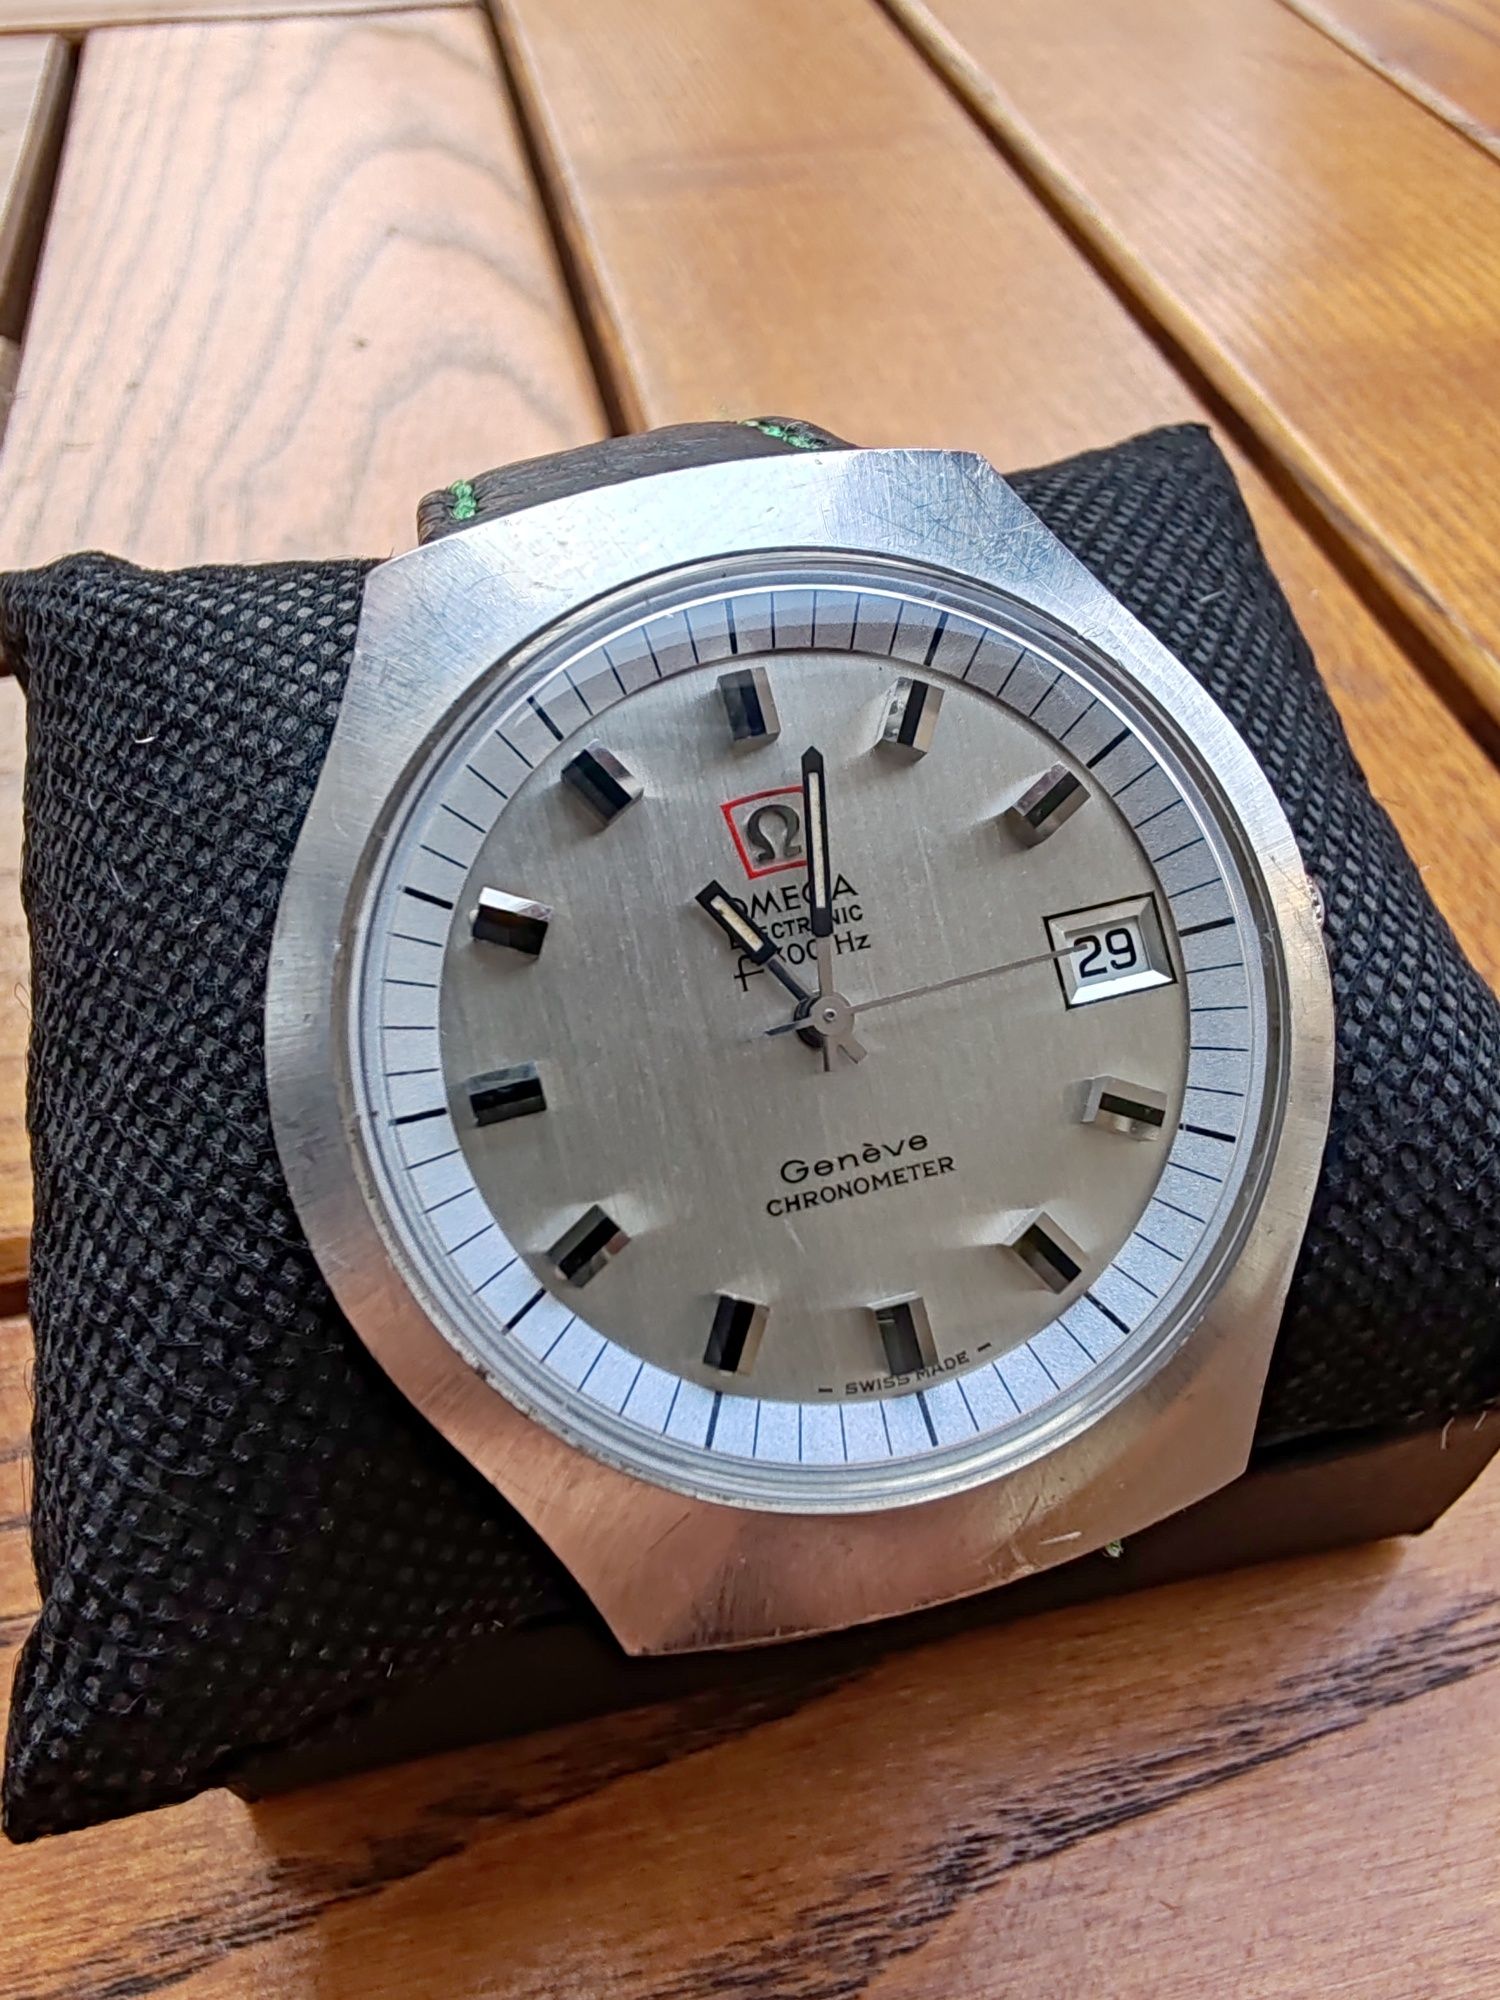 Vând ceas Omega F300 electronic Geneve cronometre